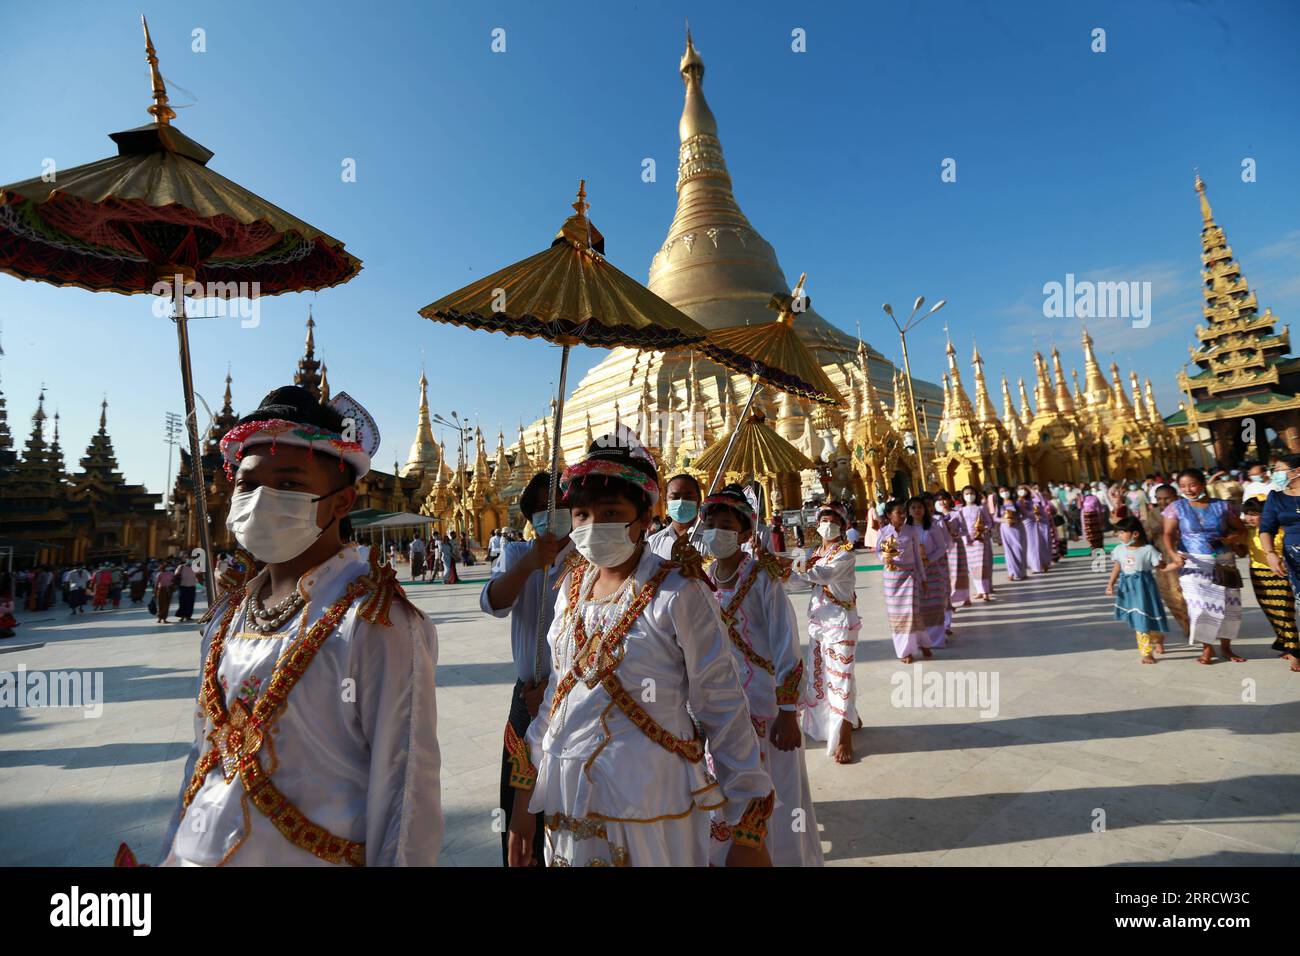 News Bilder des Tages 211118 -- YANGON, 18. November 2021 -- Menschen nehmen an einer Zeremonie während des traditionellen Tazaungdaing Festivals in der Shwedagon Pagode in Yangon, Myanmar, 18. November 2021 Teil. Das Tazaungdaing Festival, auch als Festival der Lichter bekannt, fällt in den achten Monat des traditionellen Myanmar-Kalenders. Es wird als Nationalfeiertag in Myanmar gefeiert. MYANMAR-YANGON-TRADITIONAL TAZAUNGDAING FESTIVAL UxAung PUBLICATIONxNOTxINxCHN Stockfoto